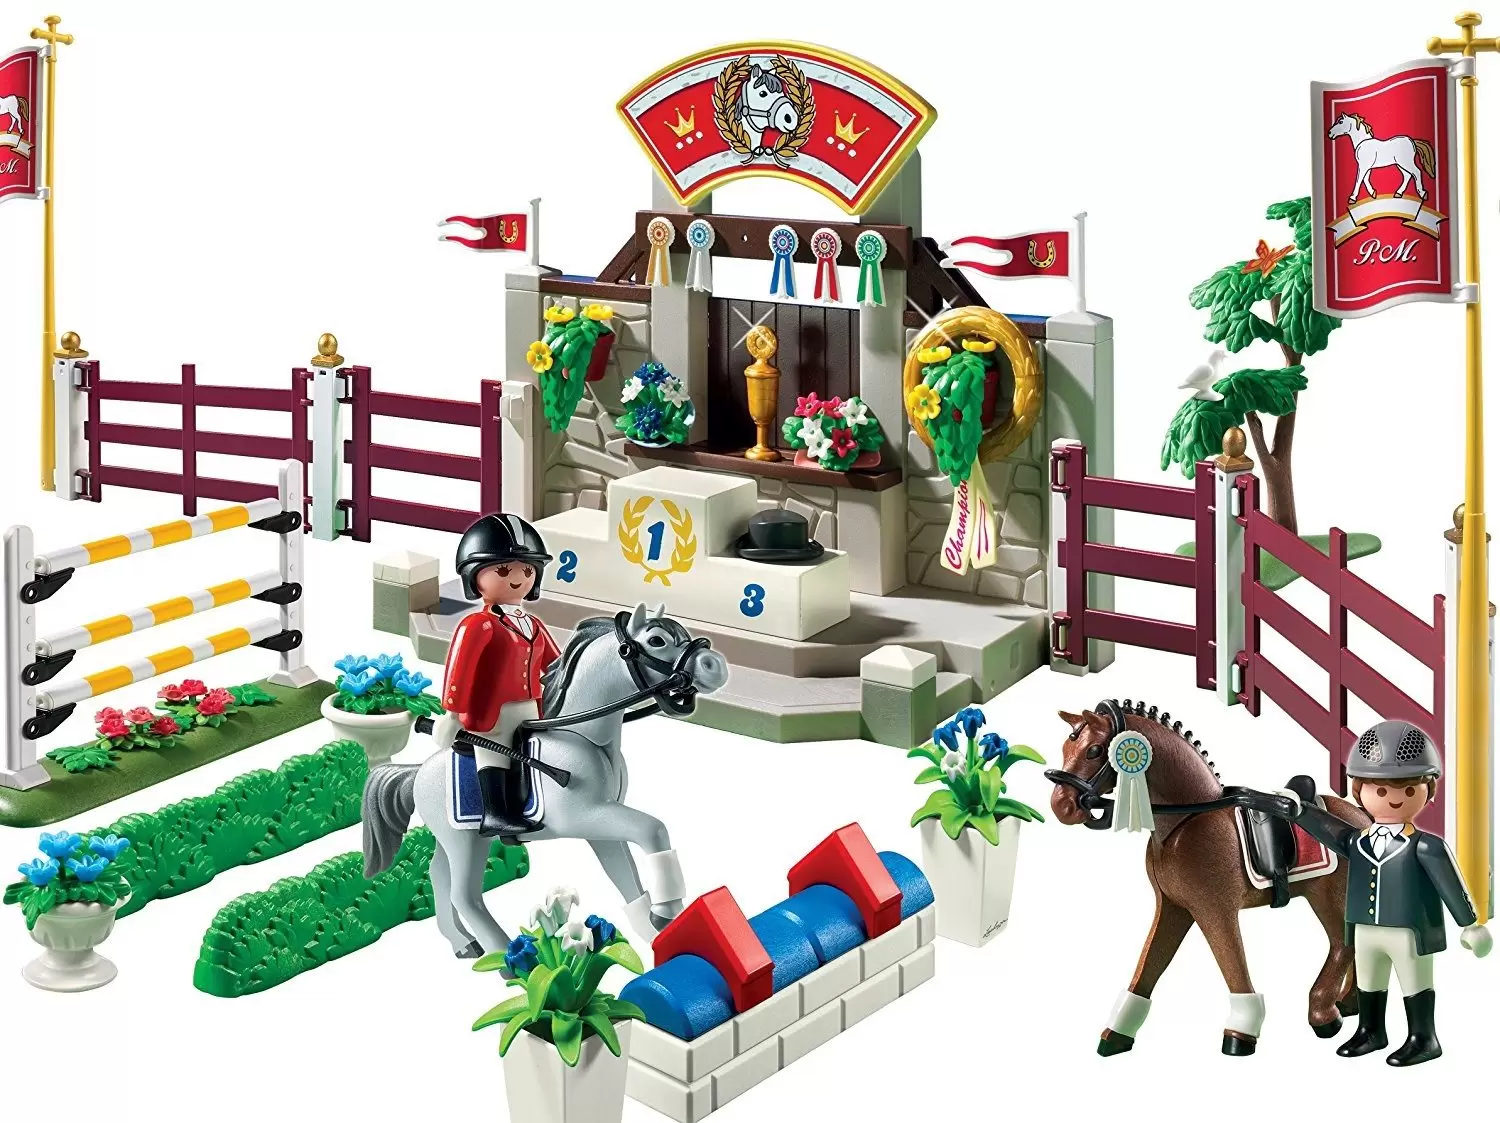 Artifact Cater Glat Horse Show Playset - Playmobil Horse Riding 5224